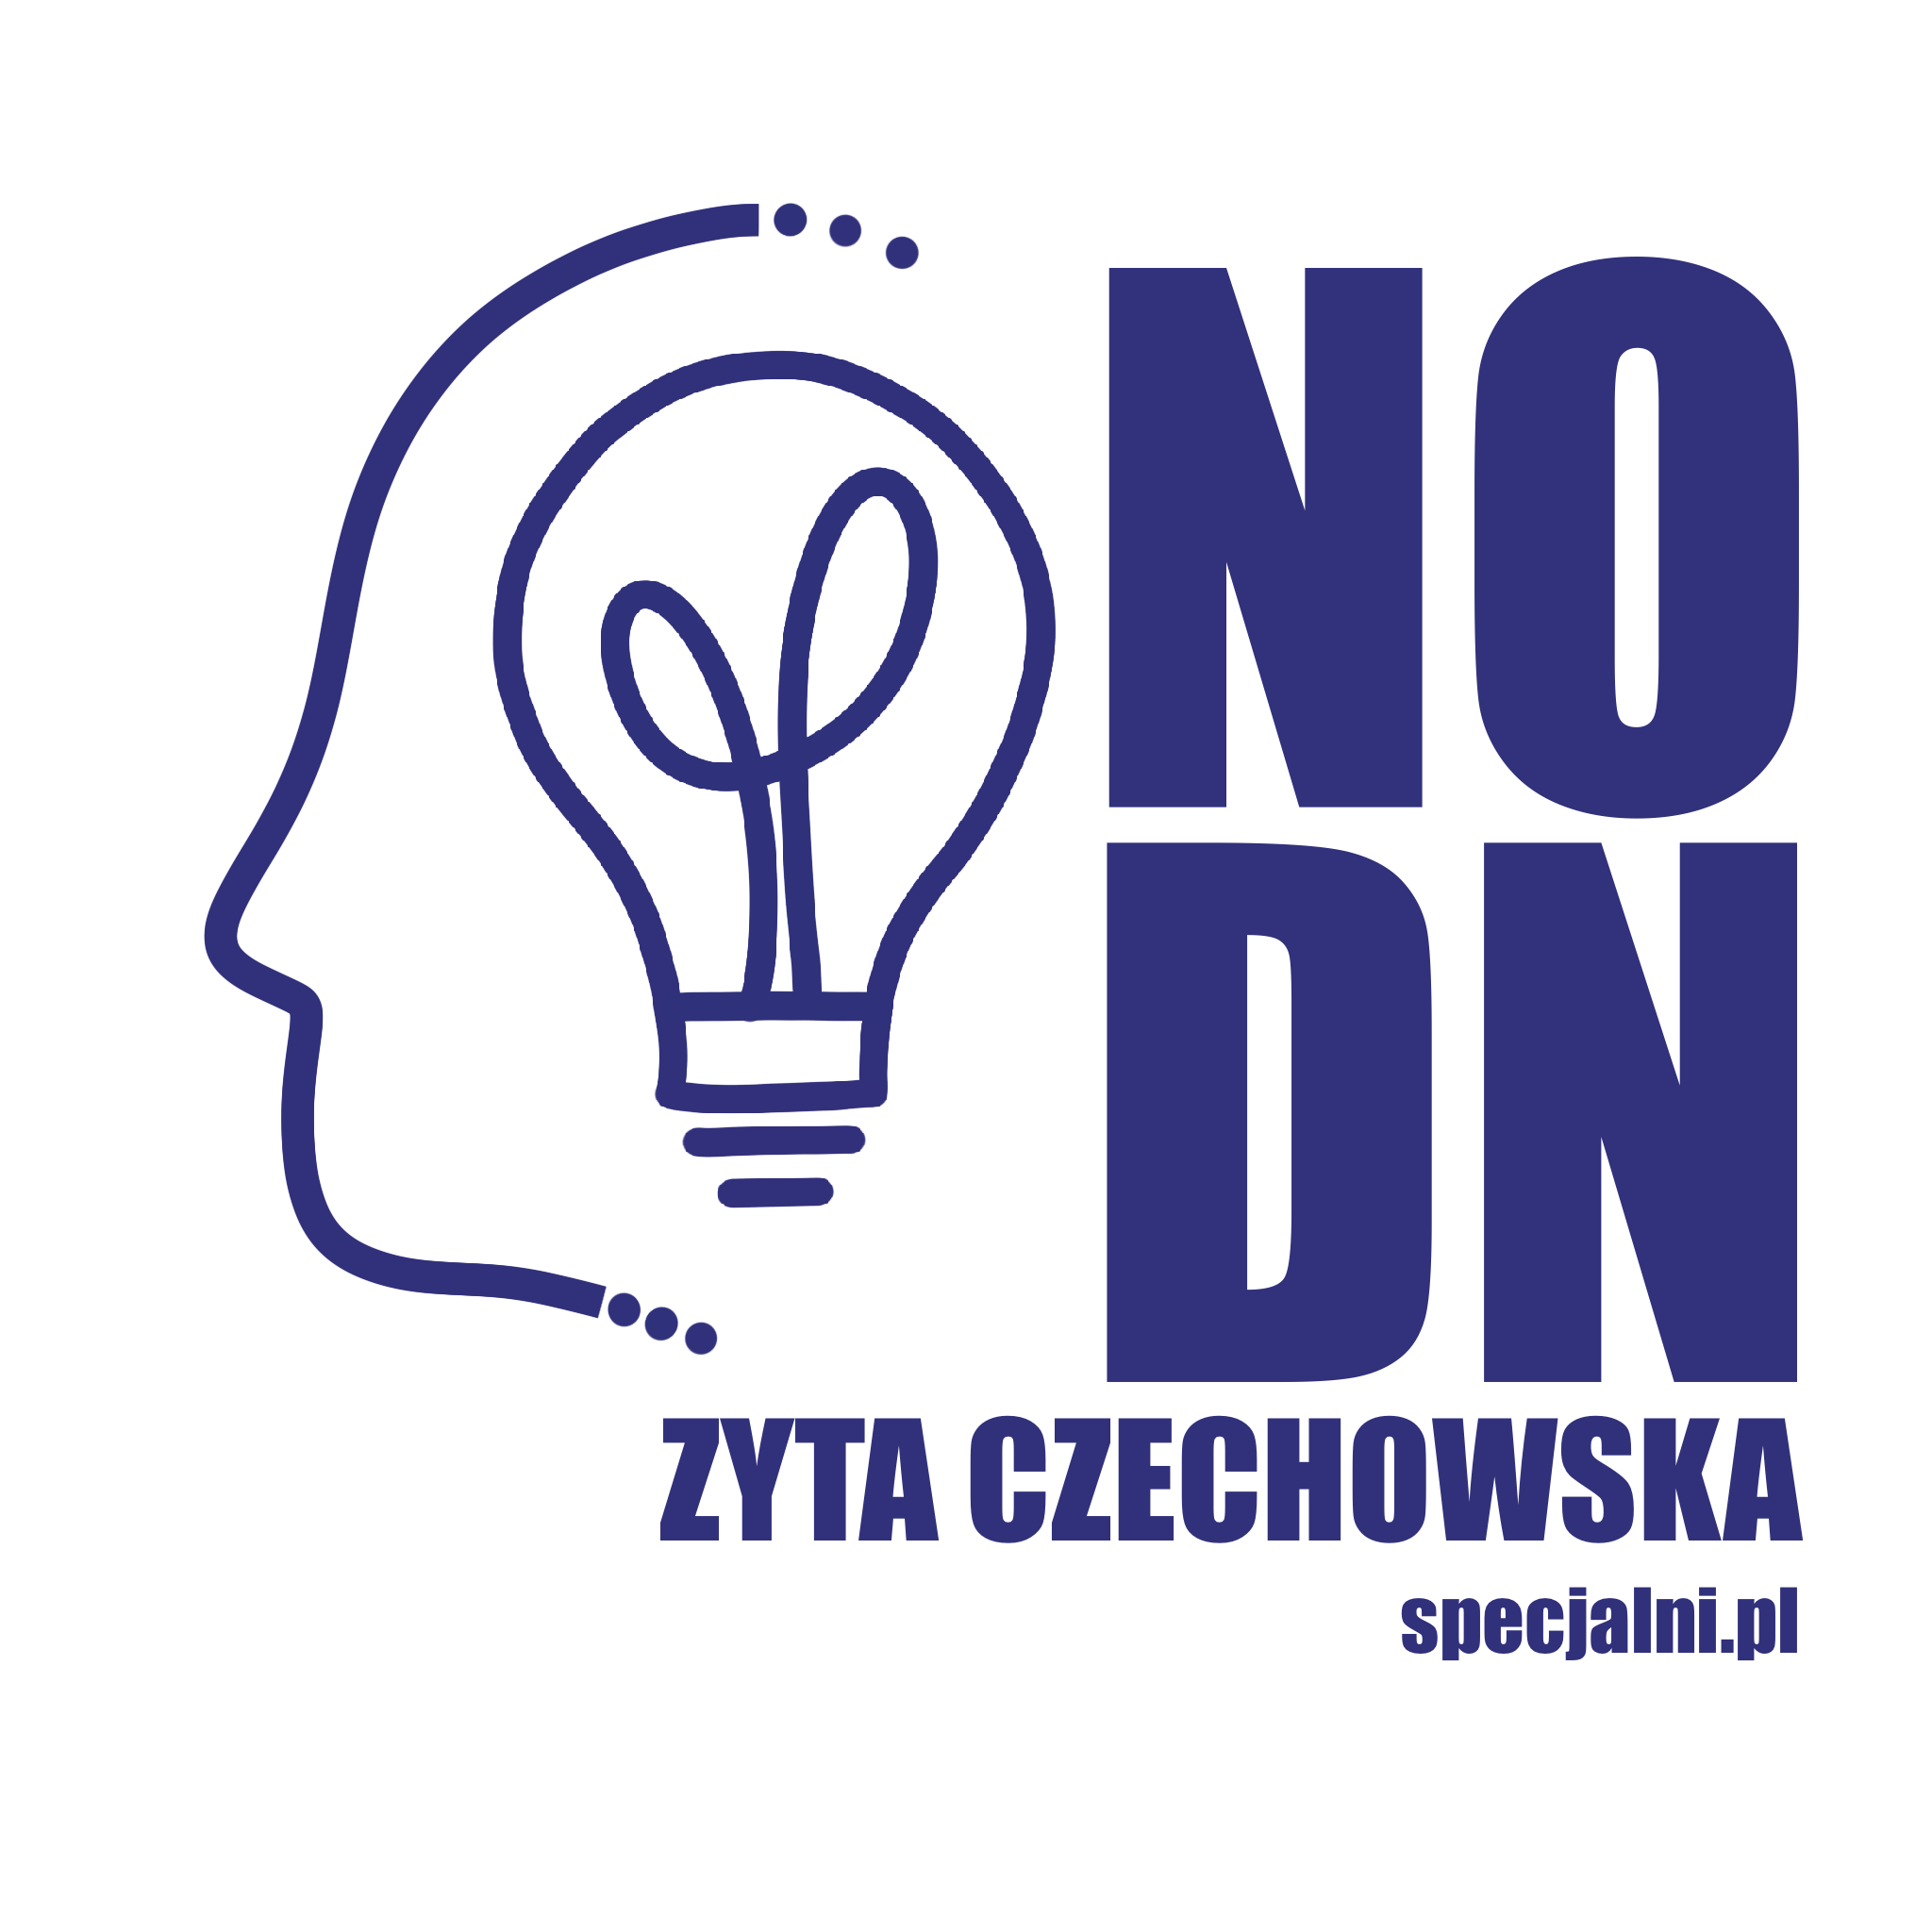 Niepubliczny Ośrodek Doskonalenia Nauczycieli Zyta Czechowska specjalni.pl